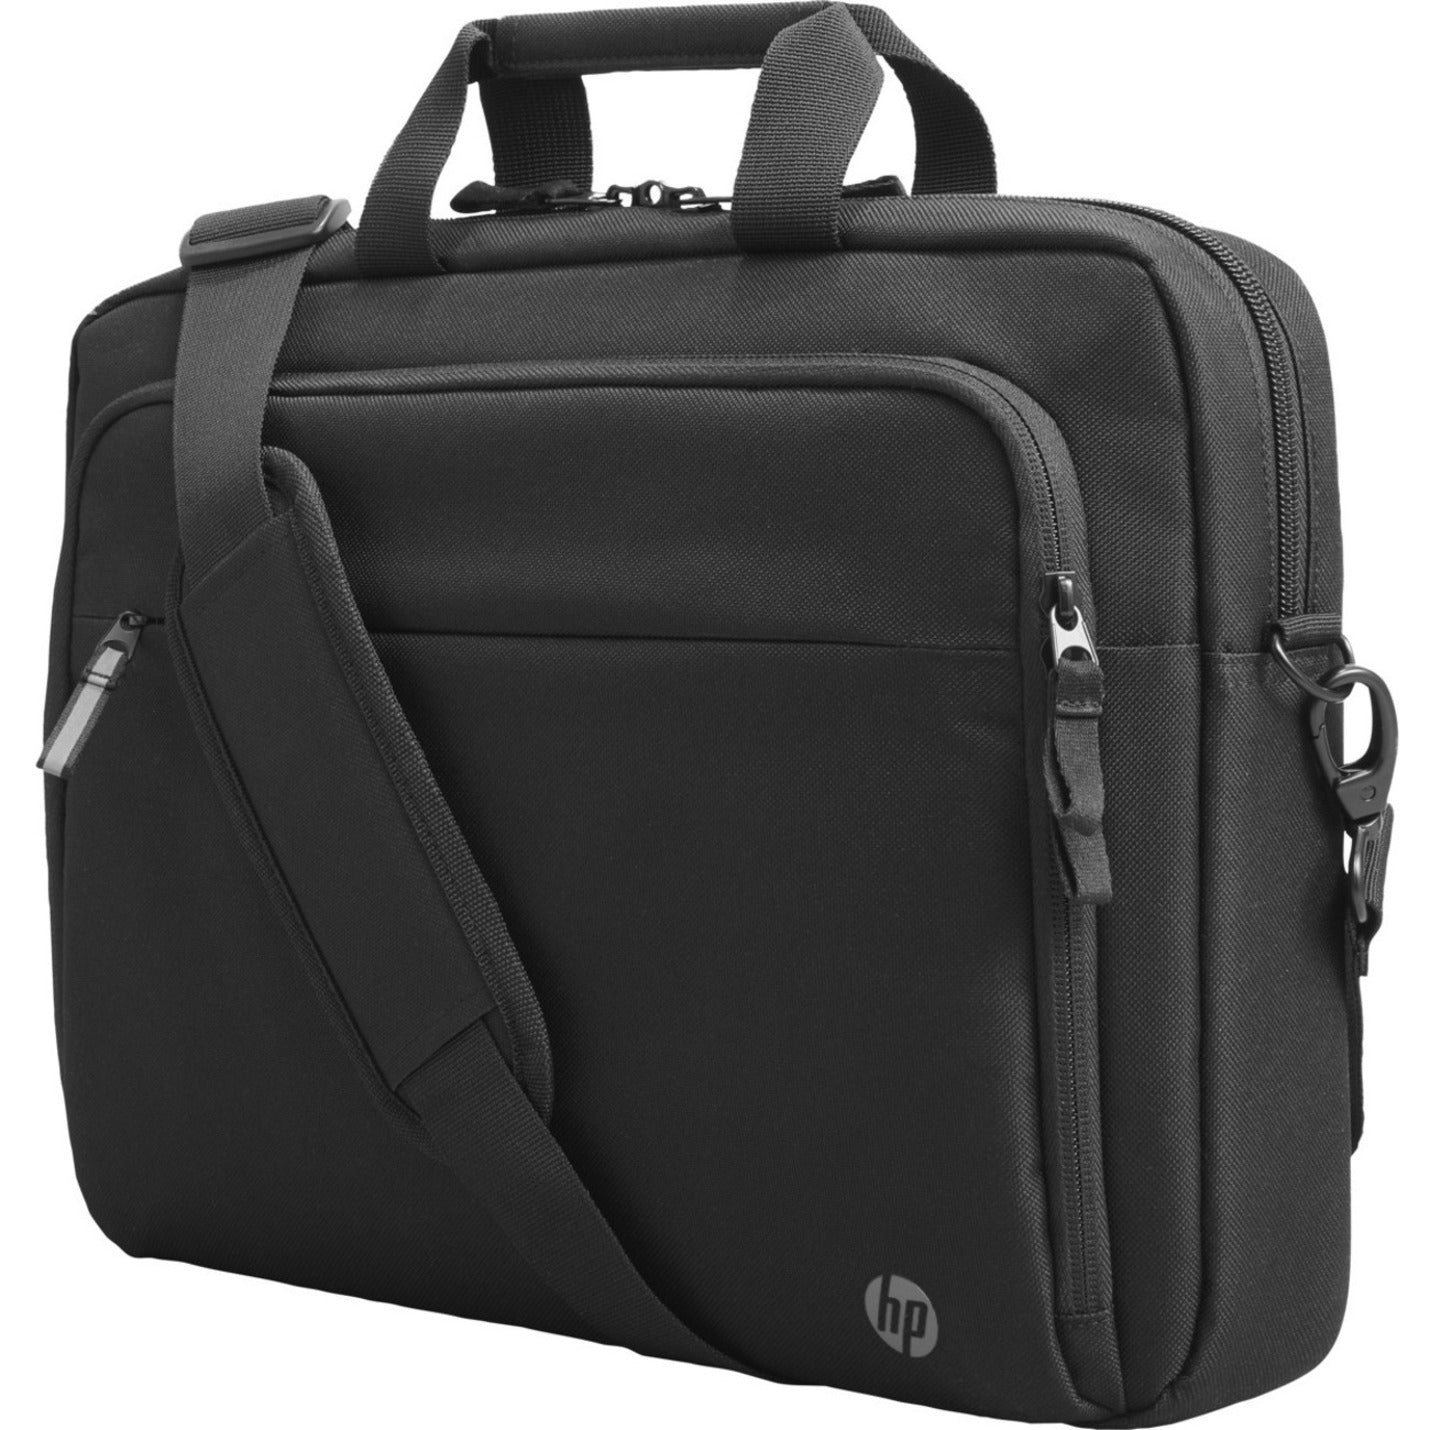 HP 3E5F8UT Verlängerung Business 156-Zoll-Laptop-Tasche